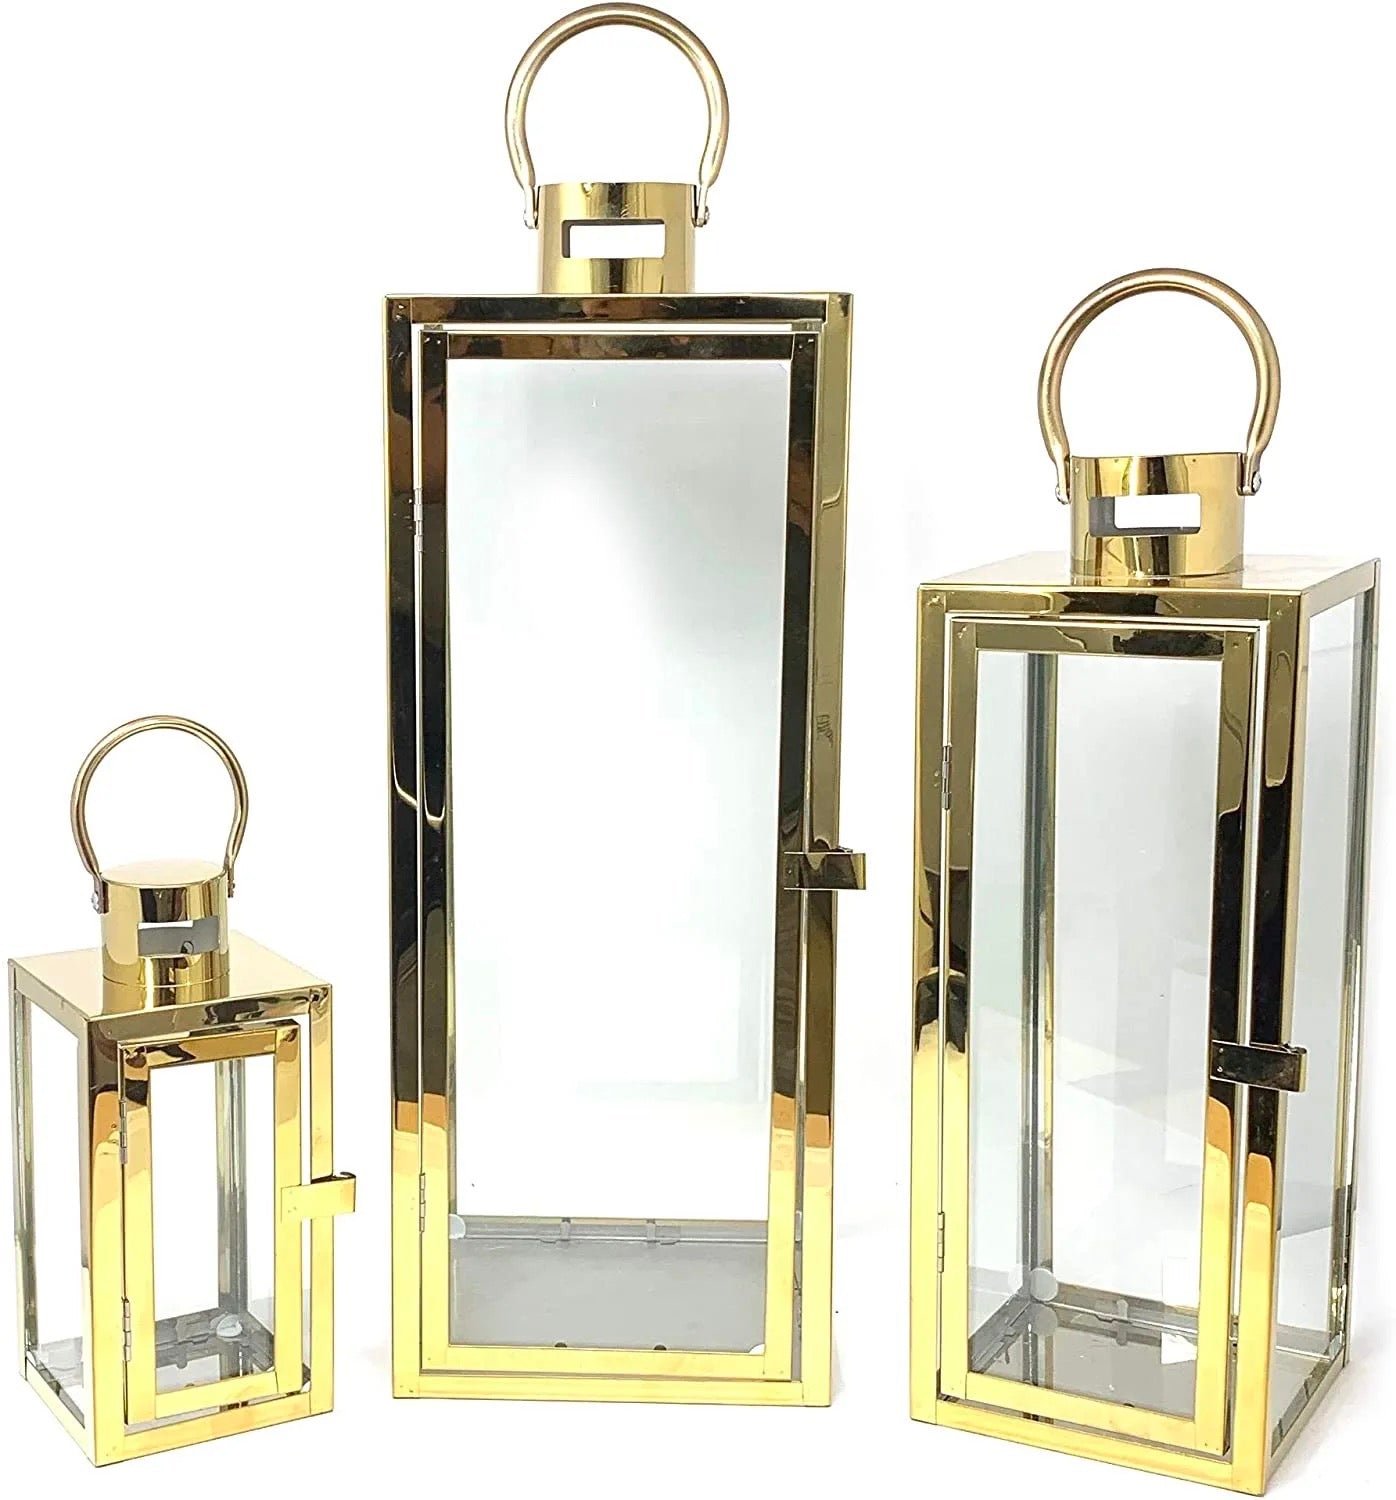 Gold Metal Lanterns set for home decorating - SHAGHAF HOME